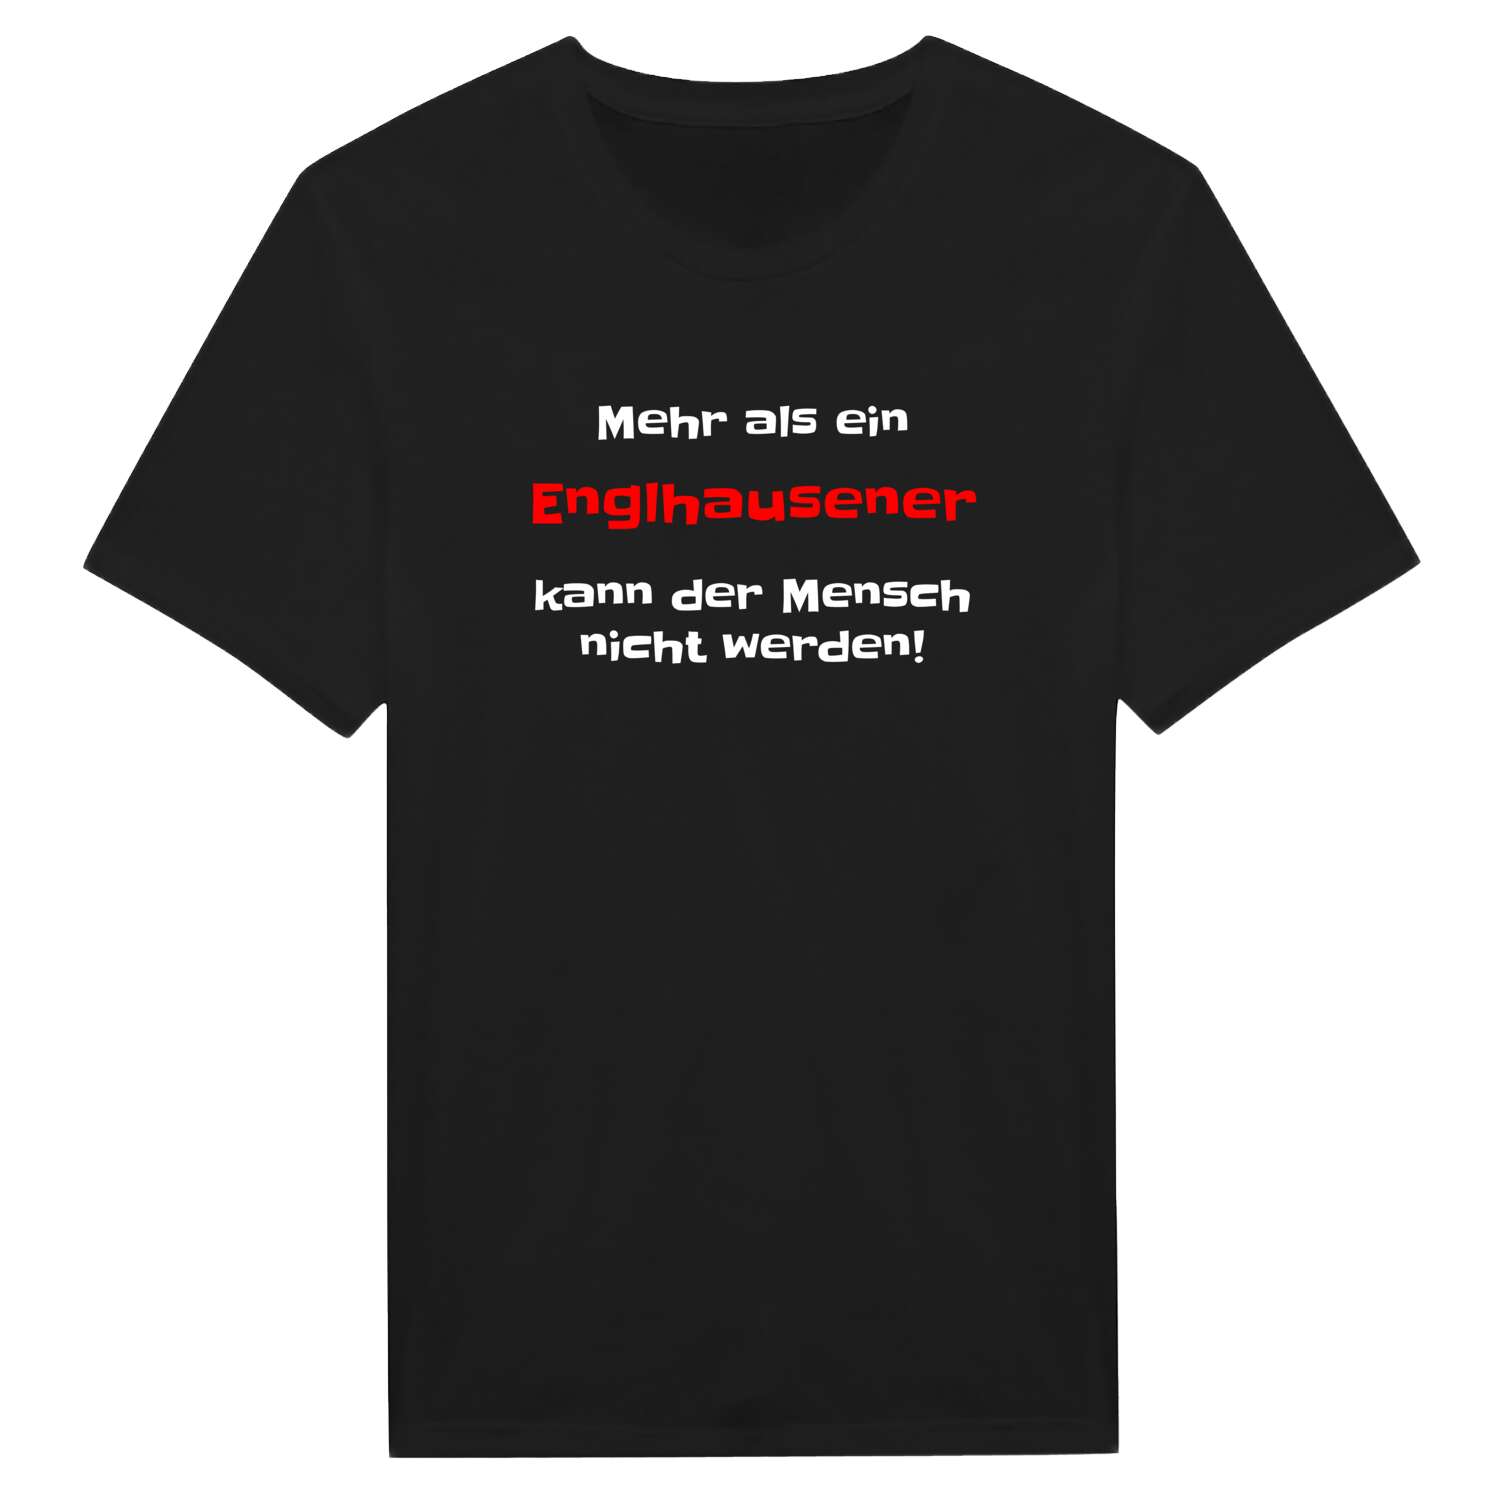 Englhausen T-Shirt »Mehr als ein«